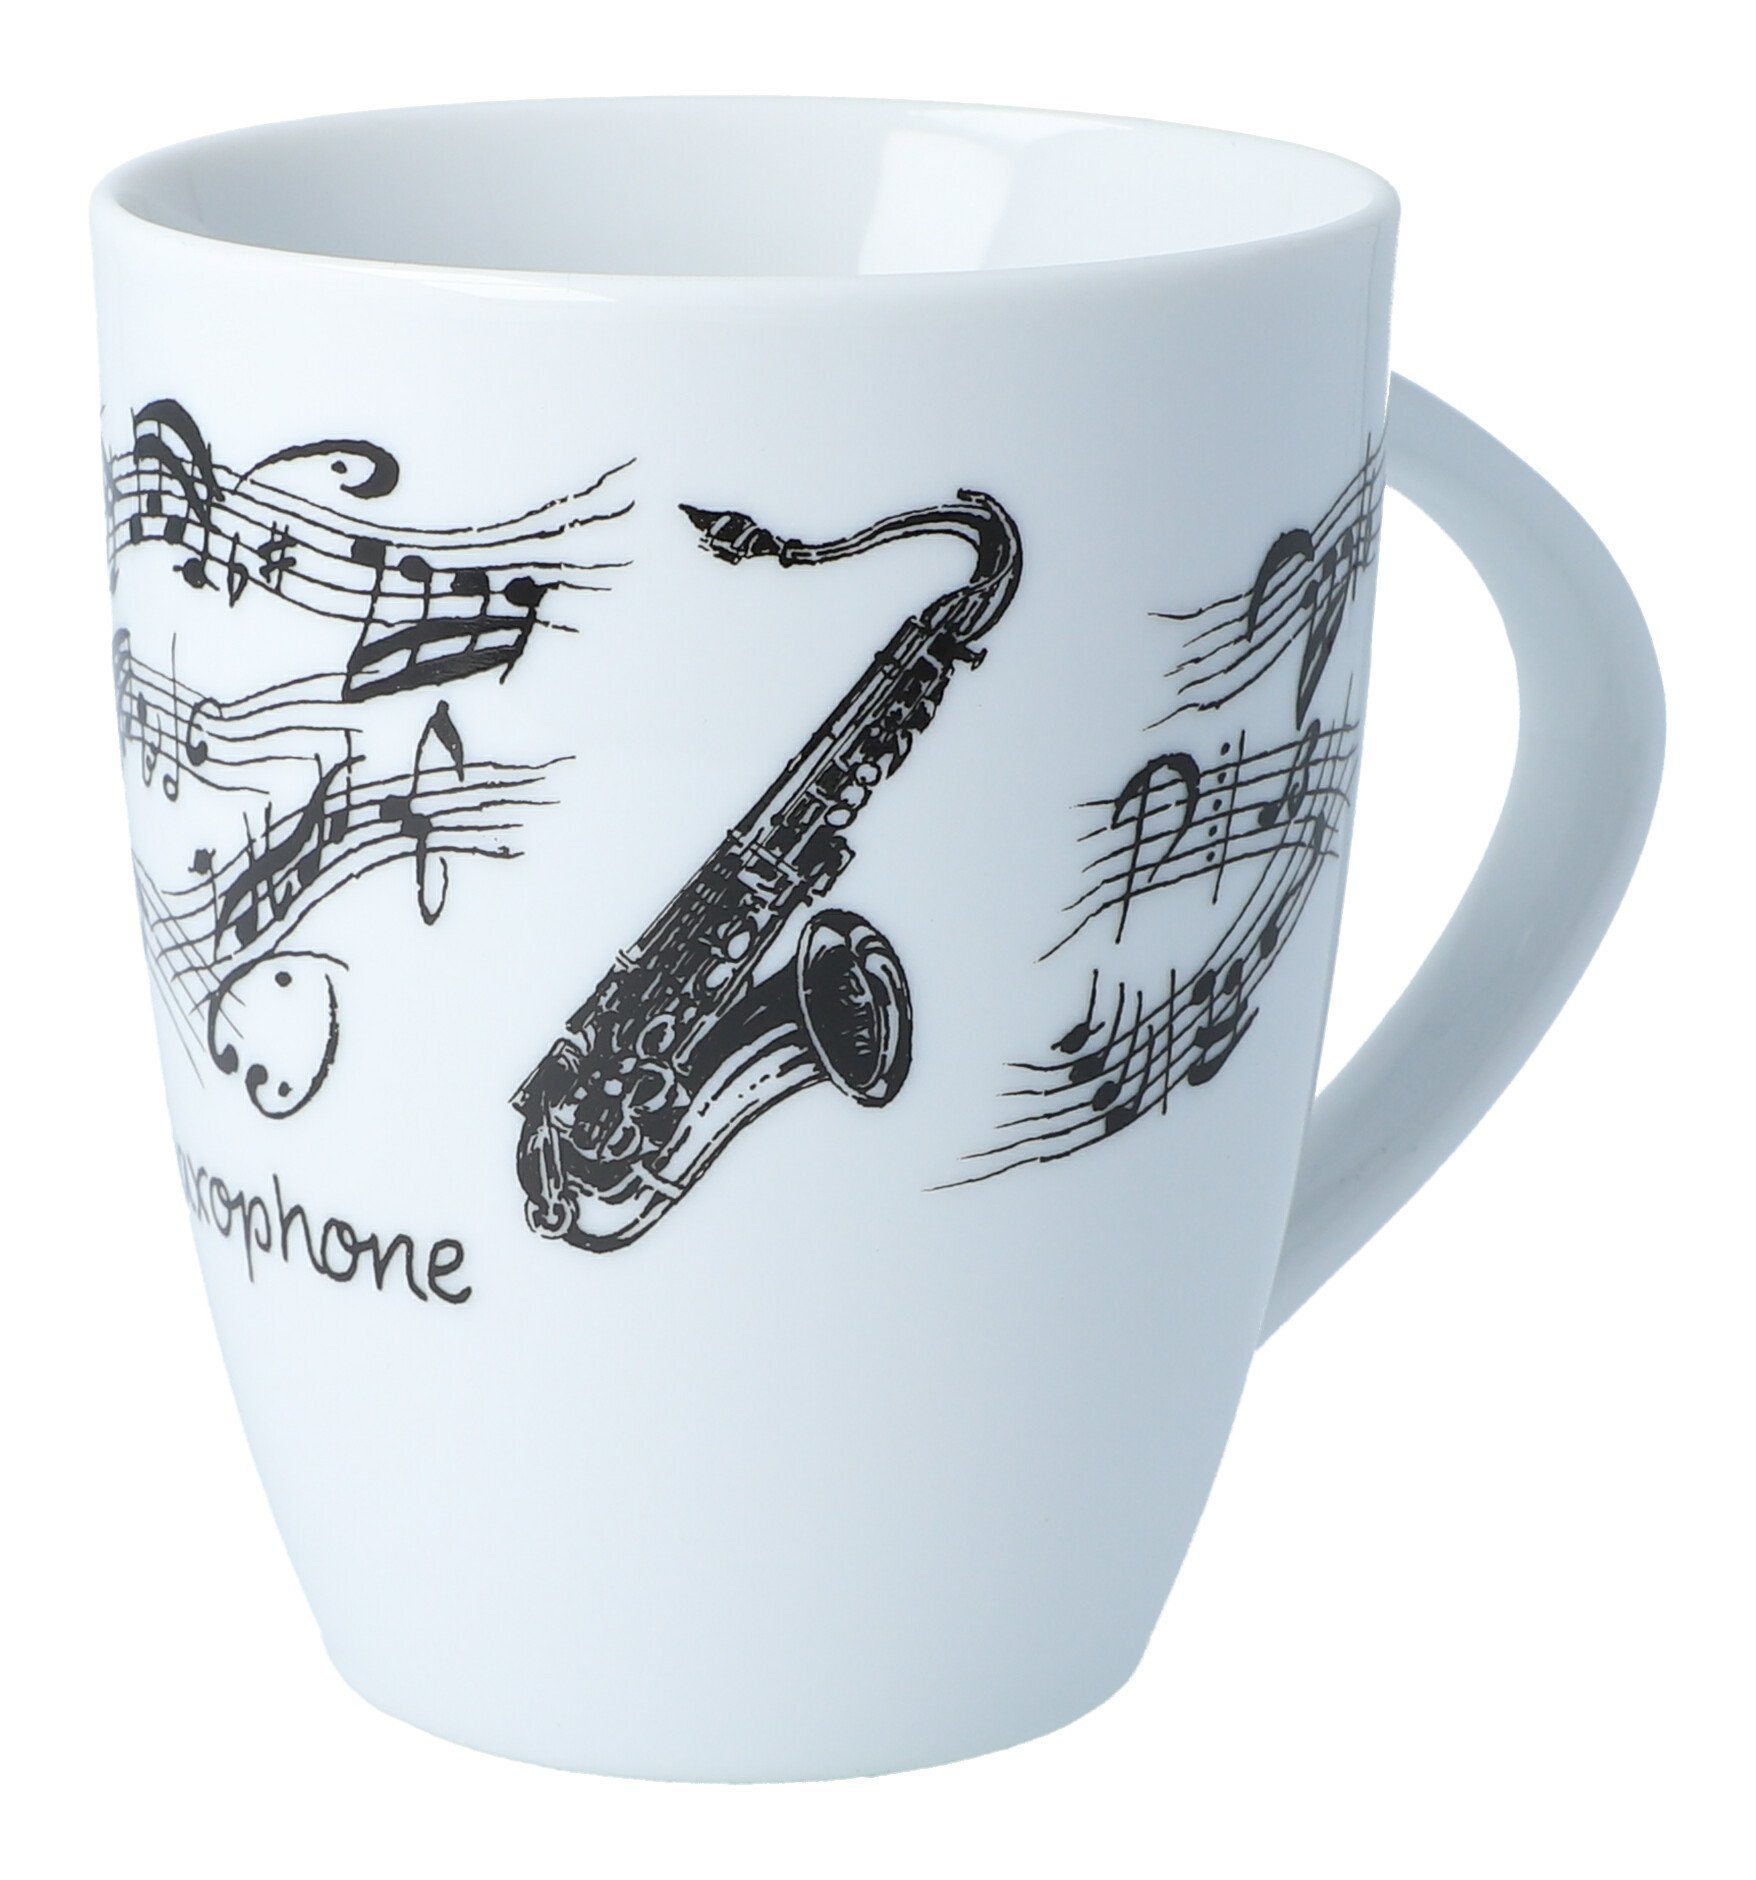 Musikboutique Becher, Porzellan, Henkelbecher aus Porzellan bedruckt mit Saxophon-Motiv, Tasse